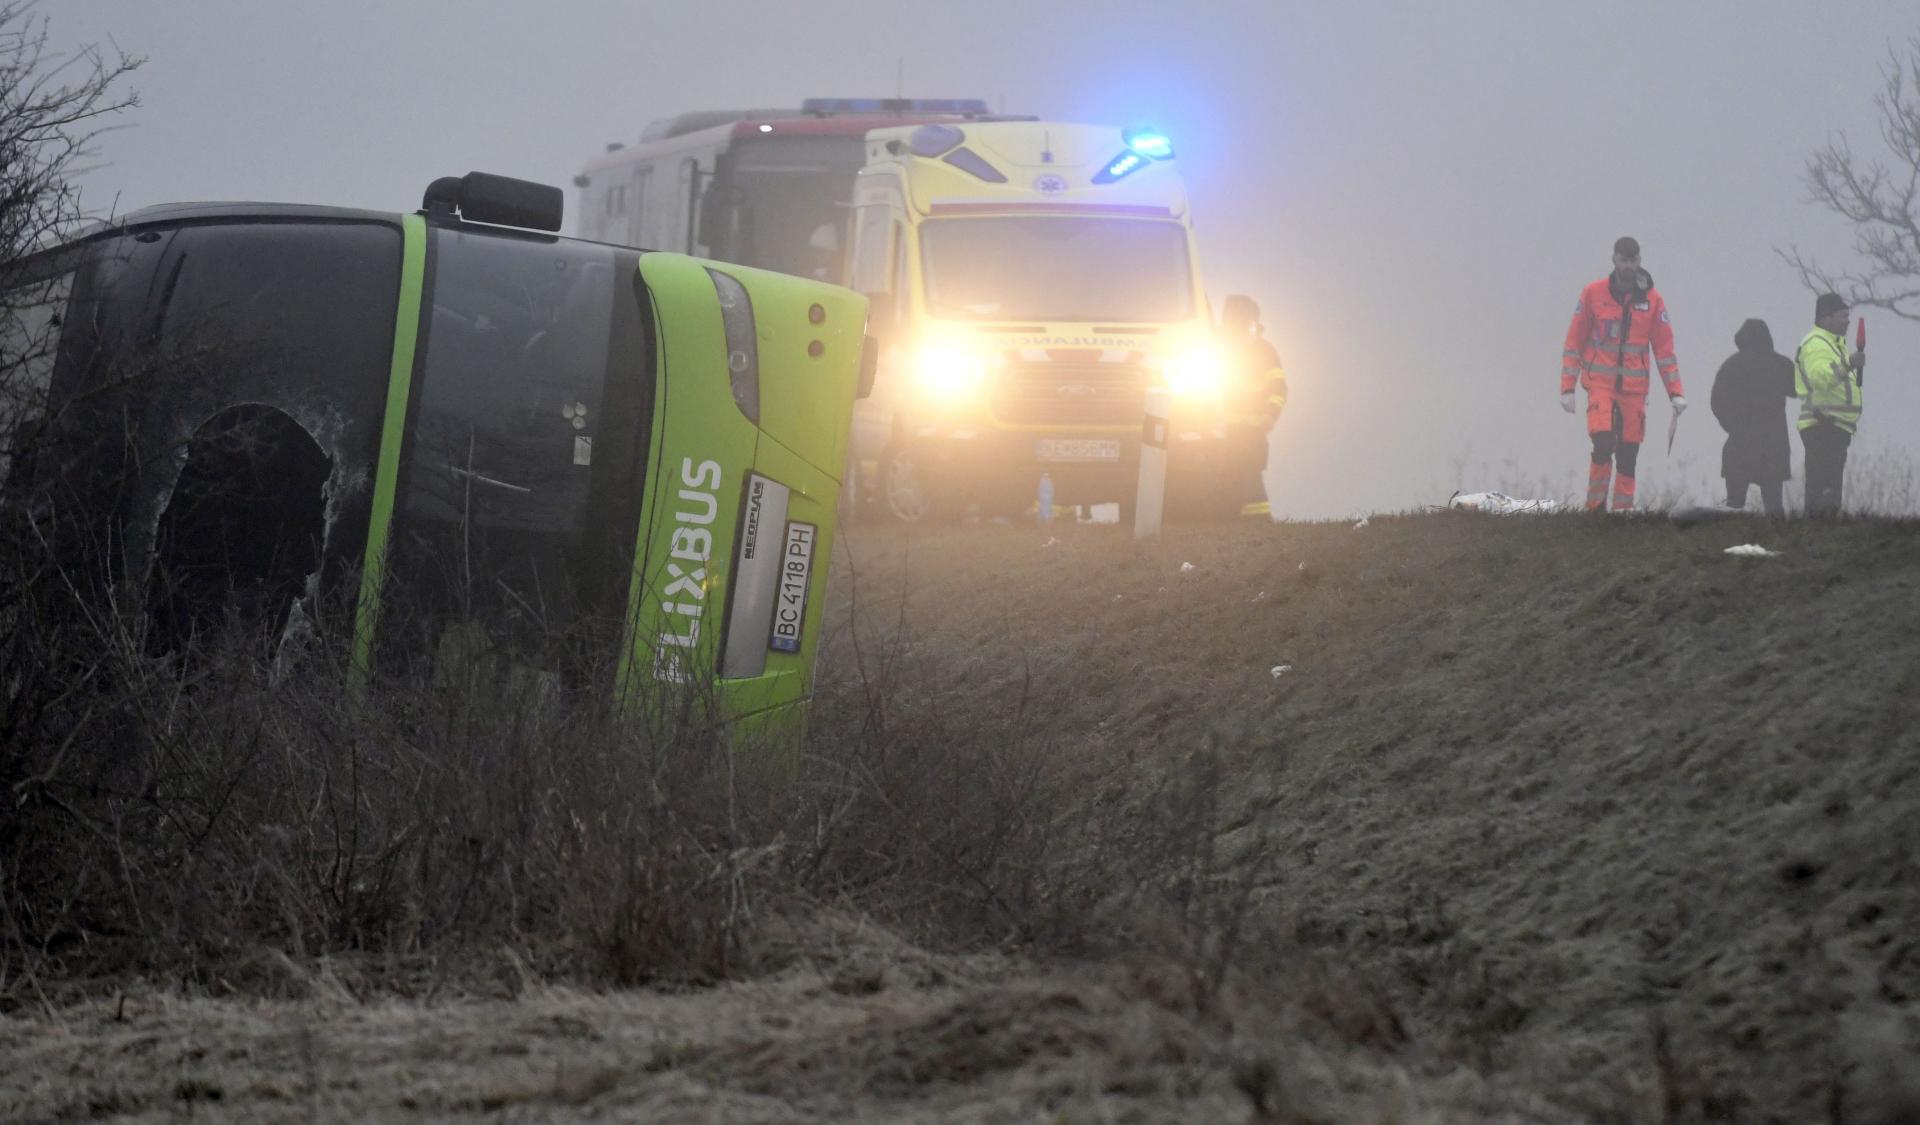 Pri obci Dargov na východnom Slovensku sa ráno prevrátil autobus, zasahovali hasiči i záchranári